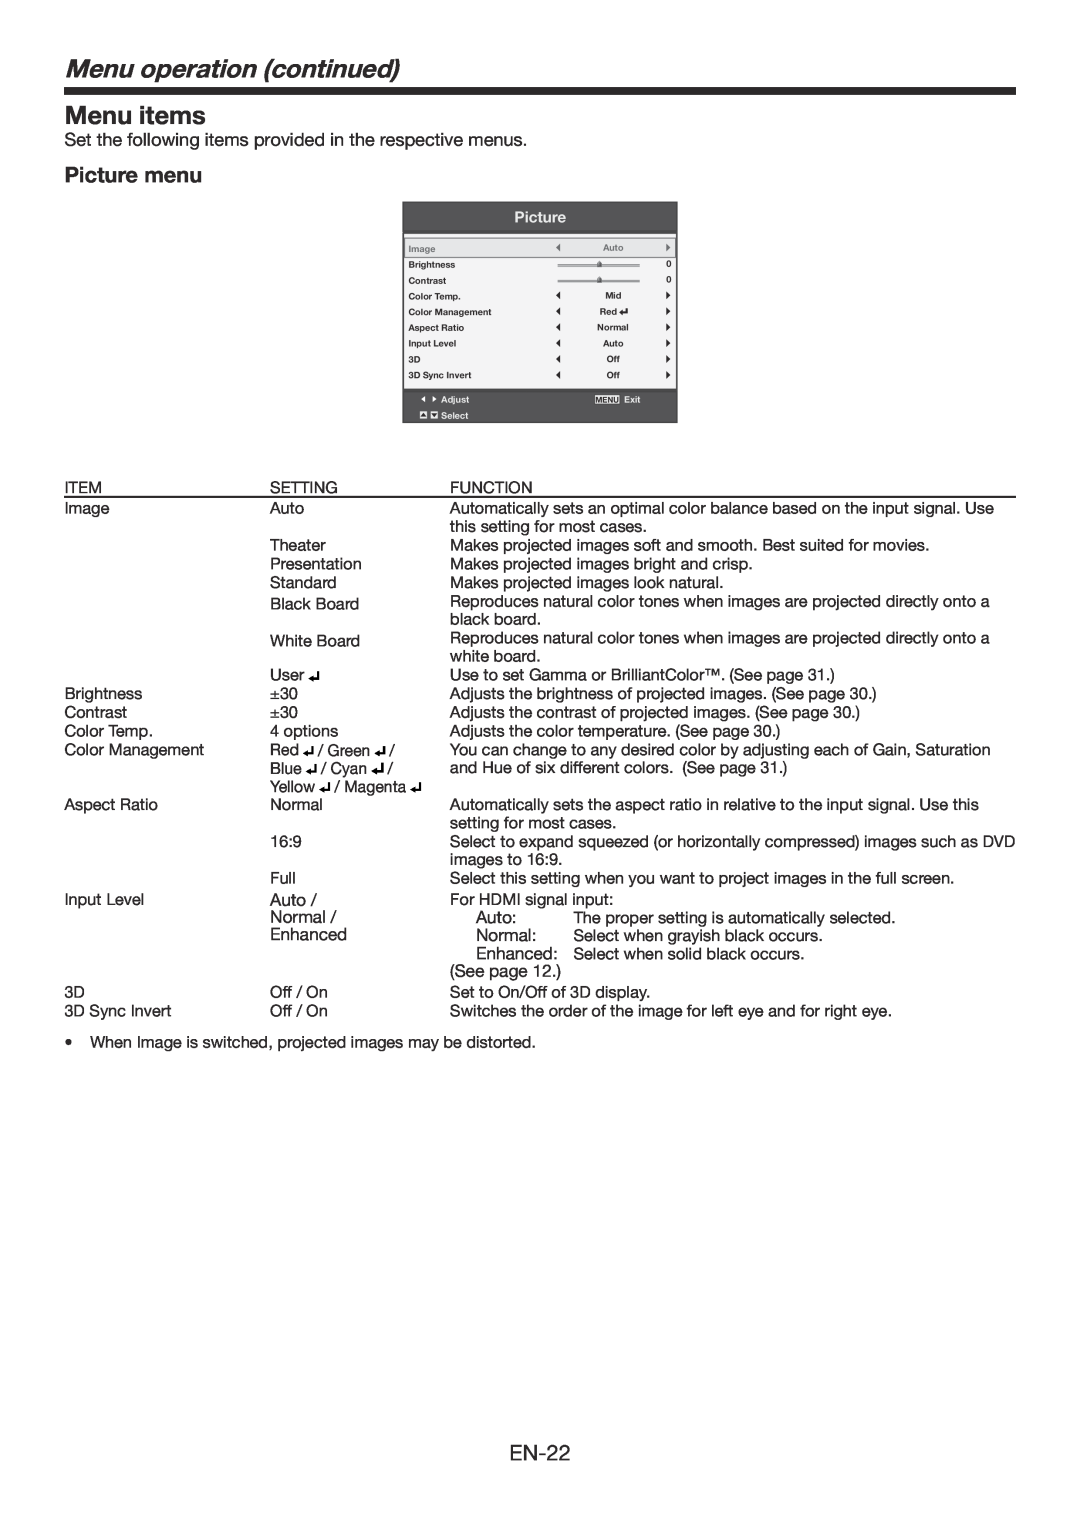 Mitsubishi Electronics WD390U-EST user manual Menu items, Picture menu, Menu operation continued 